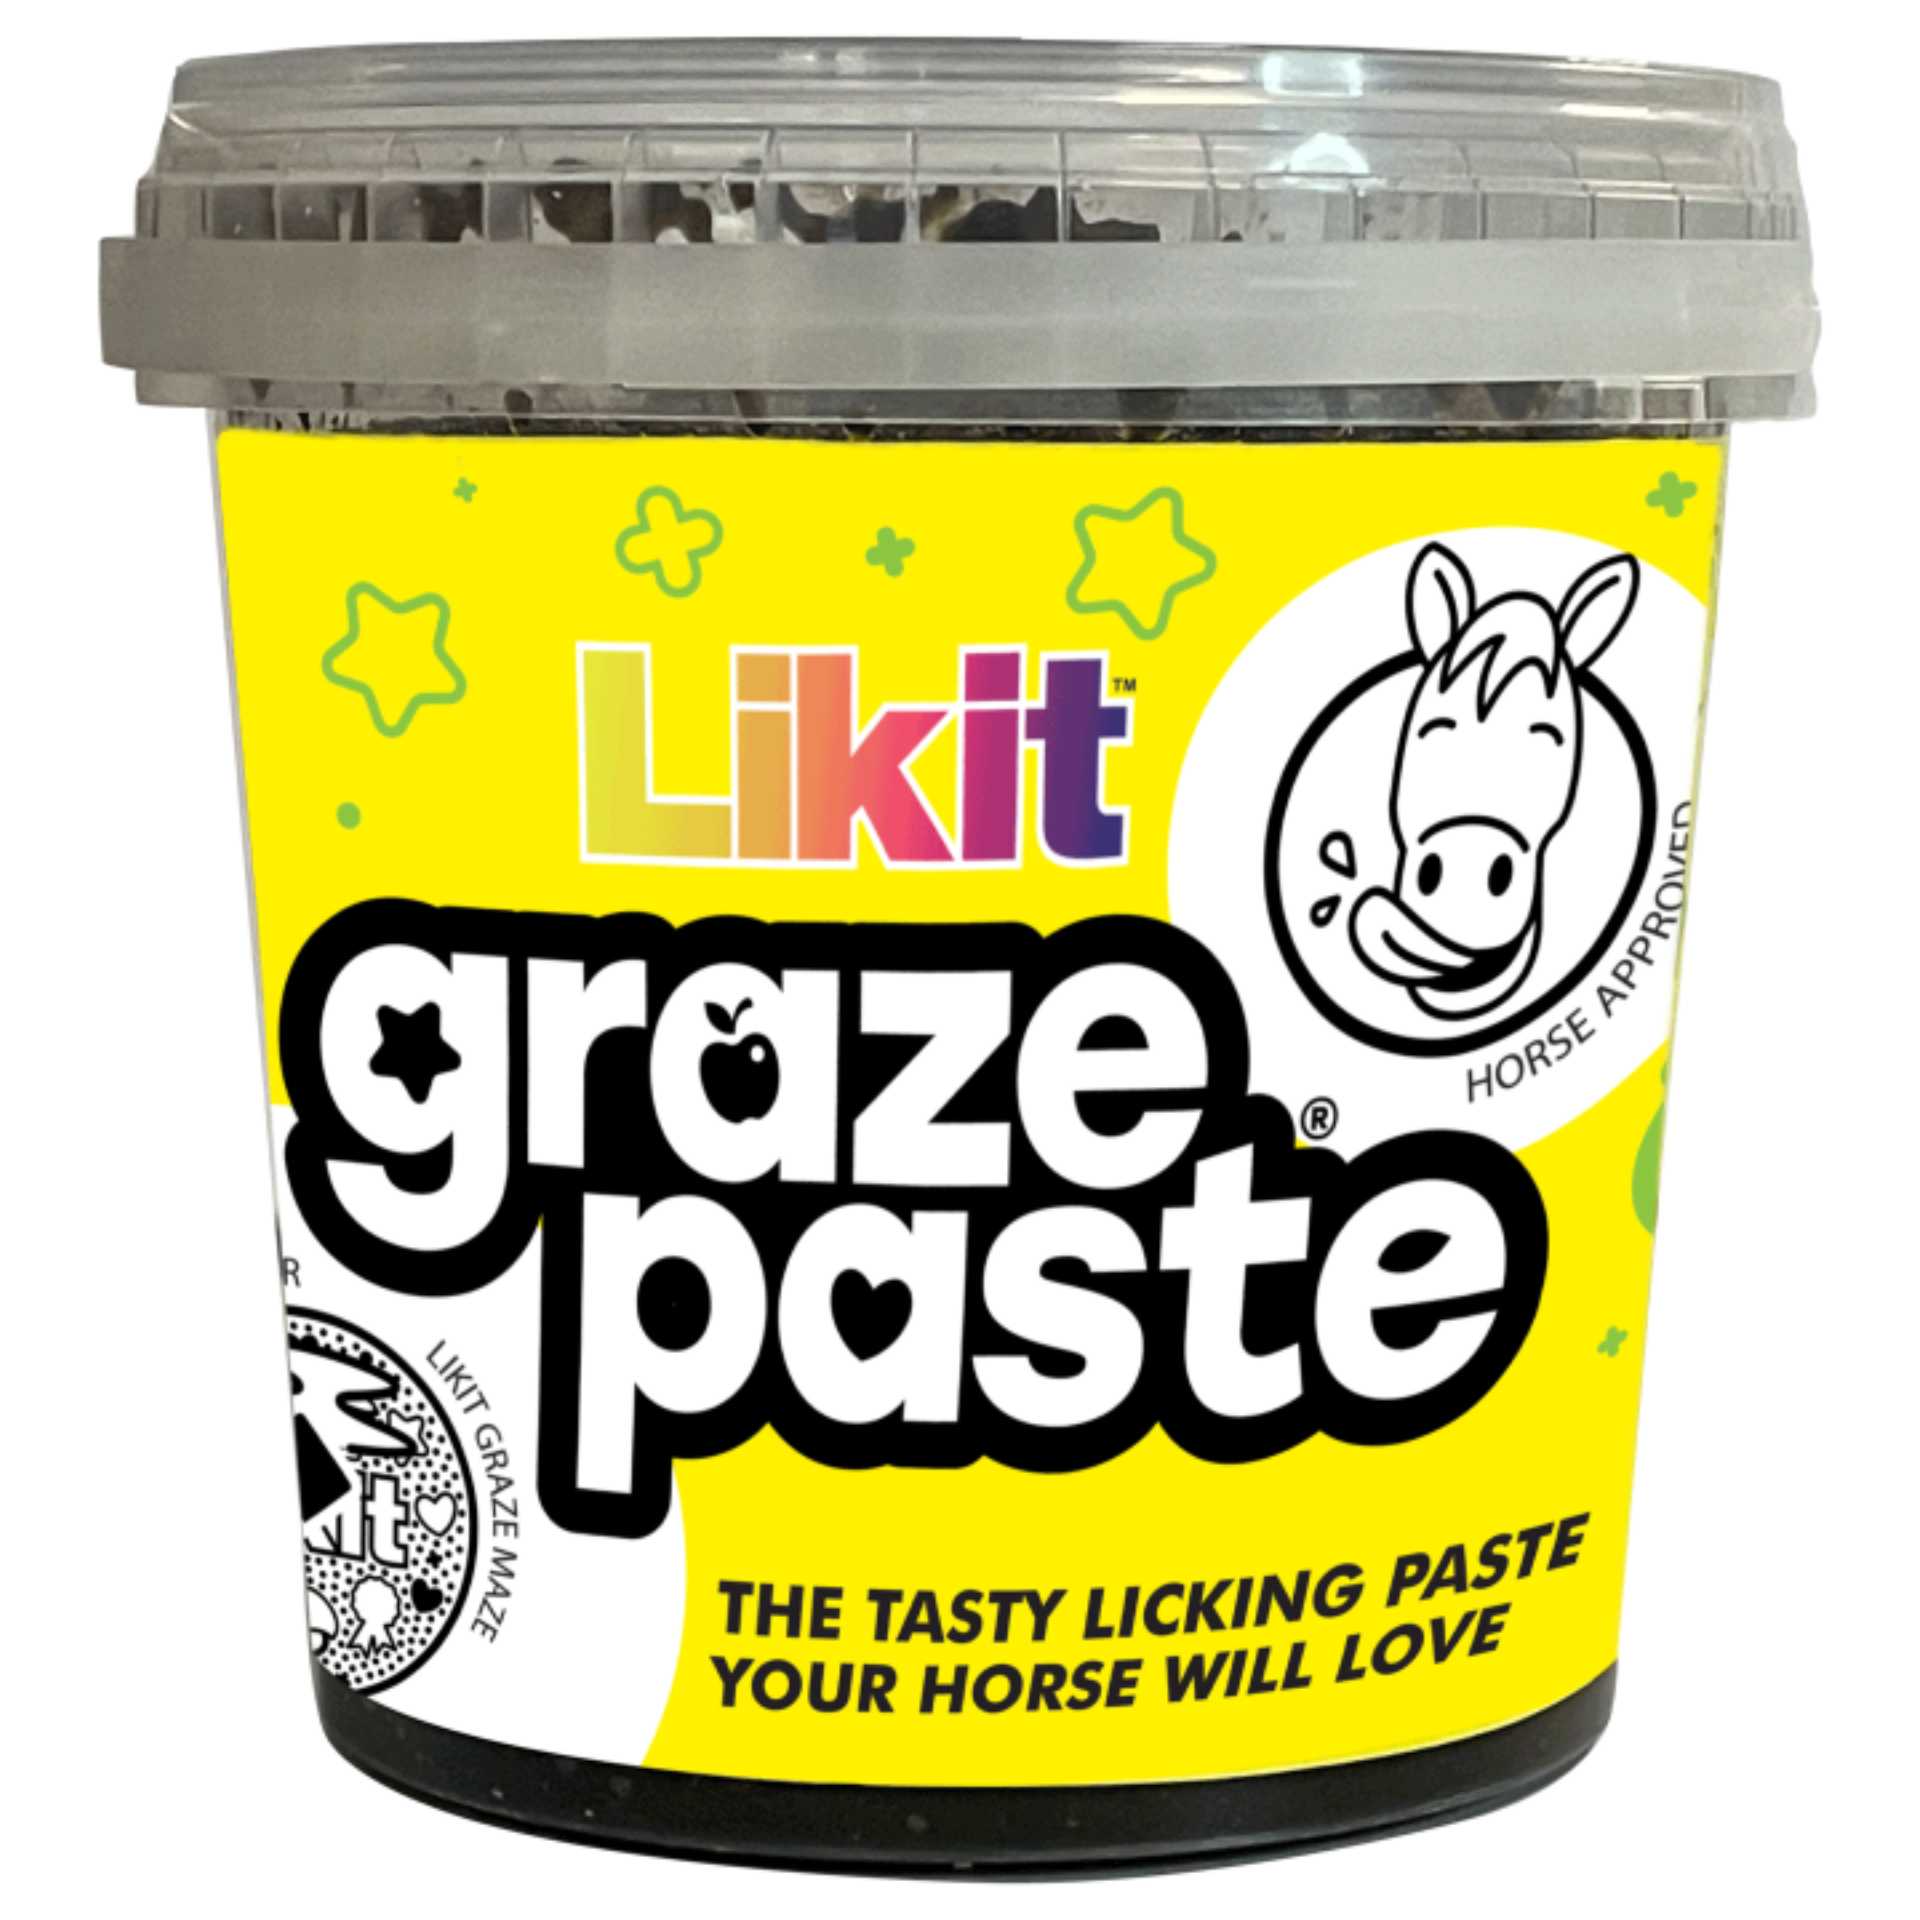 Likit Paste für Graze Maze, 1,2 kg